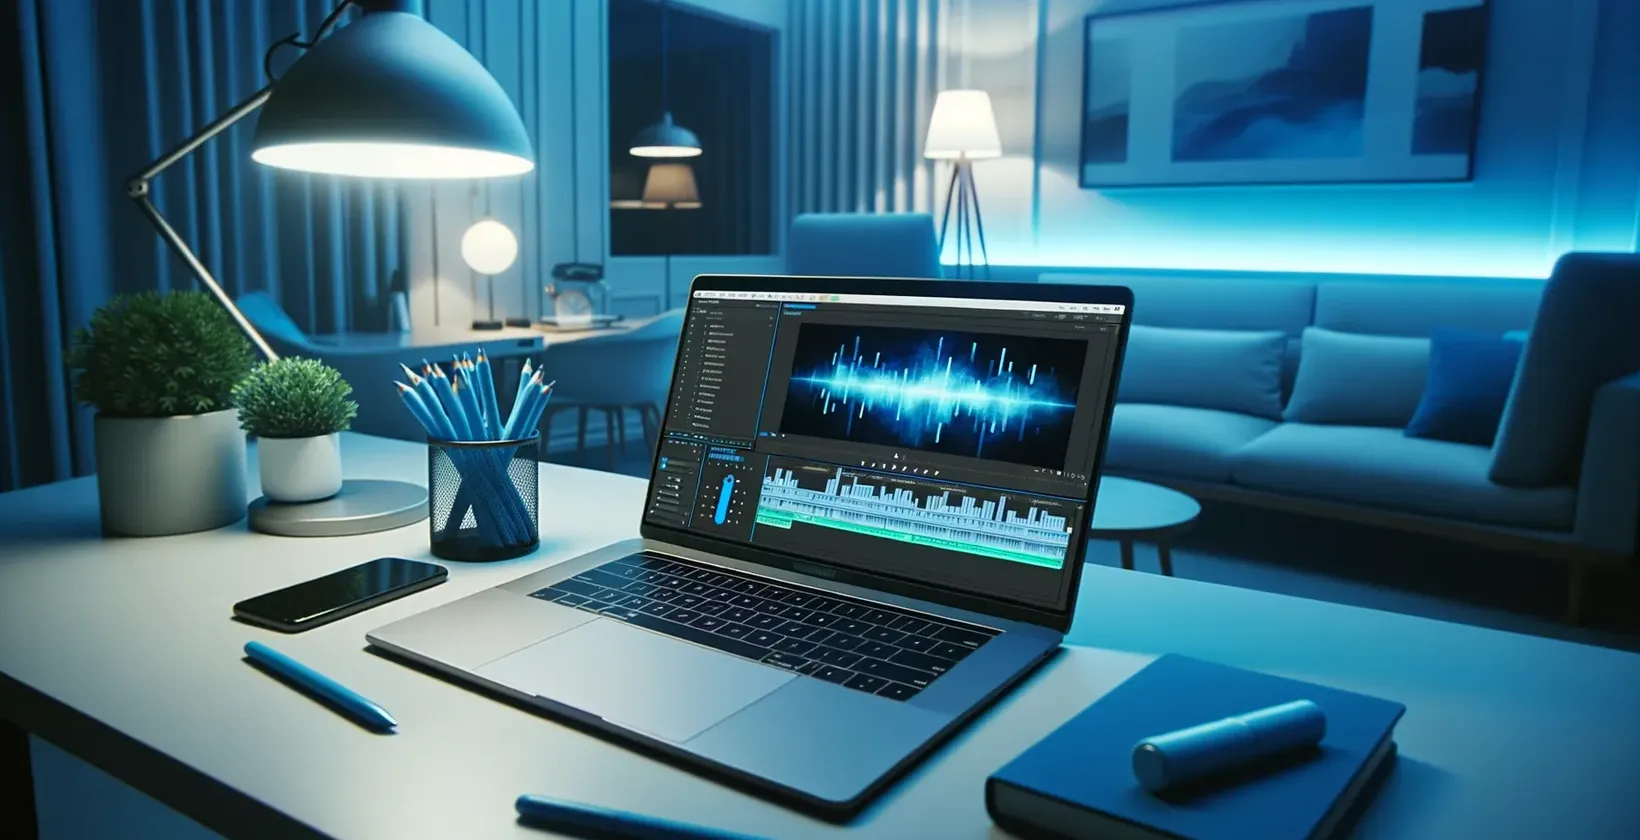 흰색 테이블, 램프, 전화기, 문구류에 오디오 파형을 보여주는 노트북이 있는 최고의 음성-텍스트 소프트웨어 작업 공간